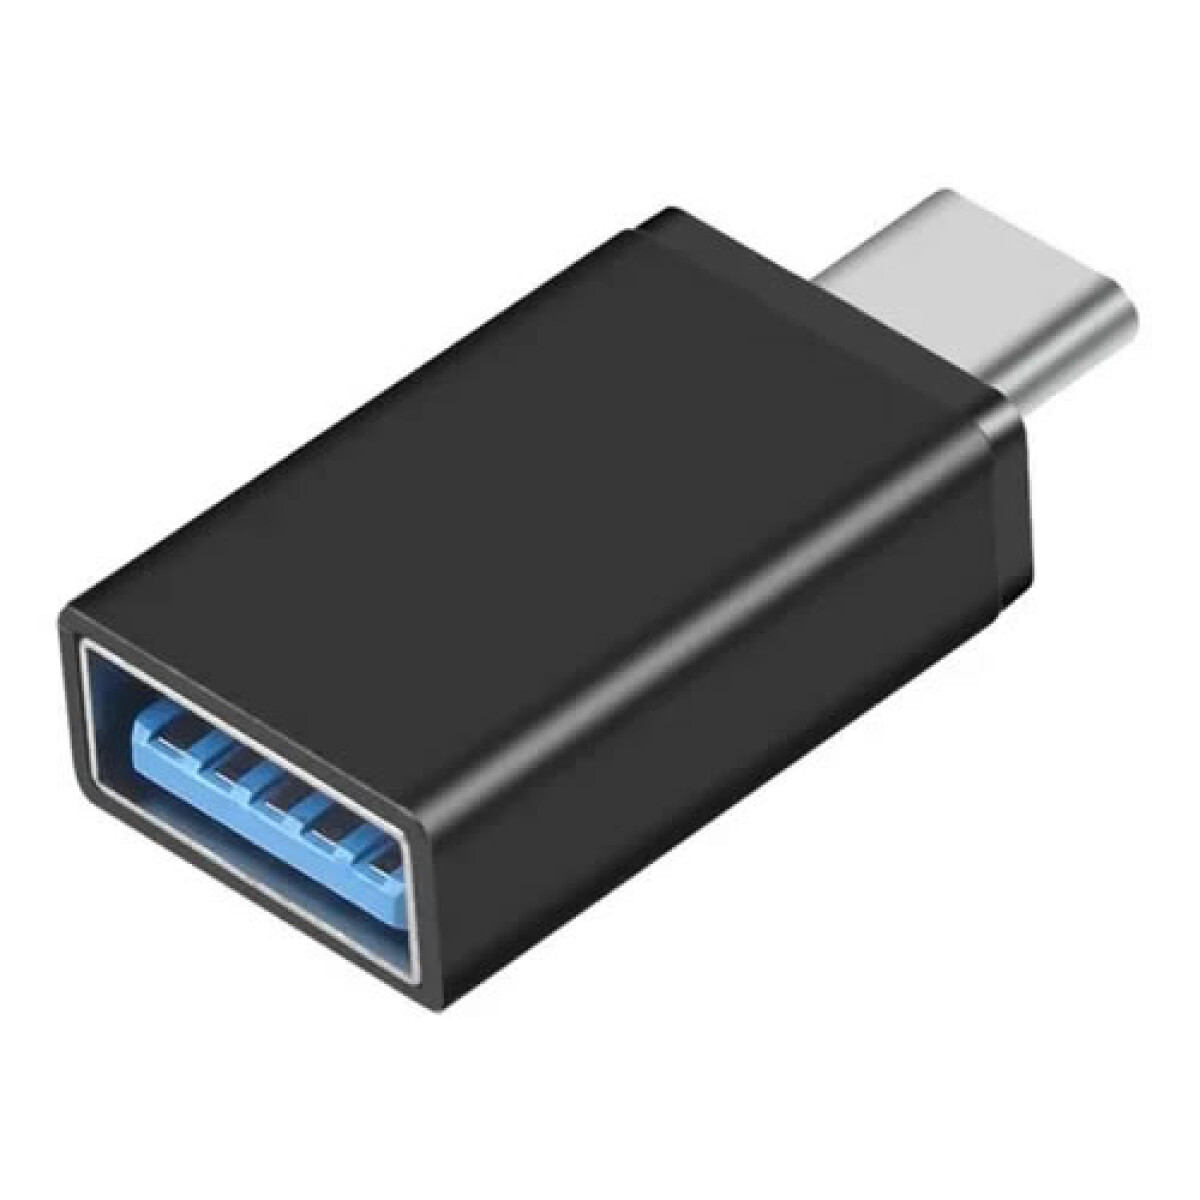 Ficha OTG de USB tipo C macho a USB 3.0 tipo A hembra 